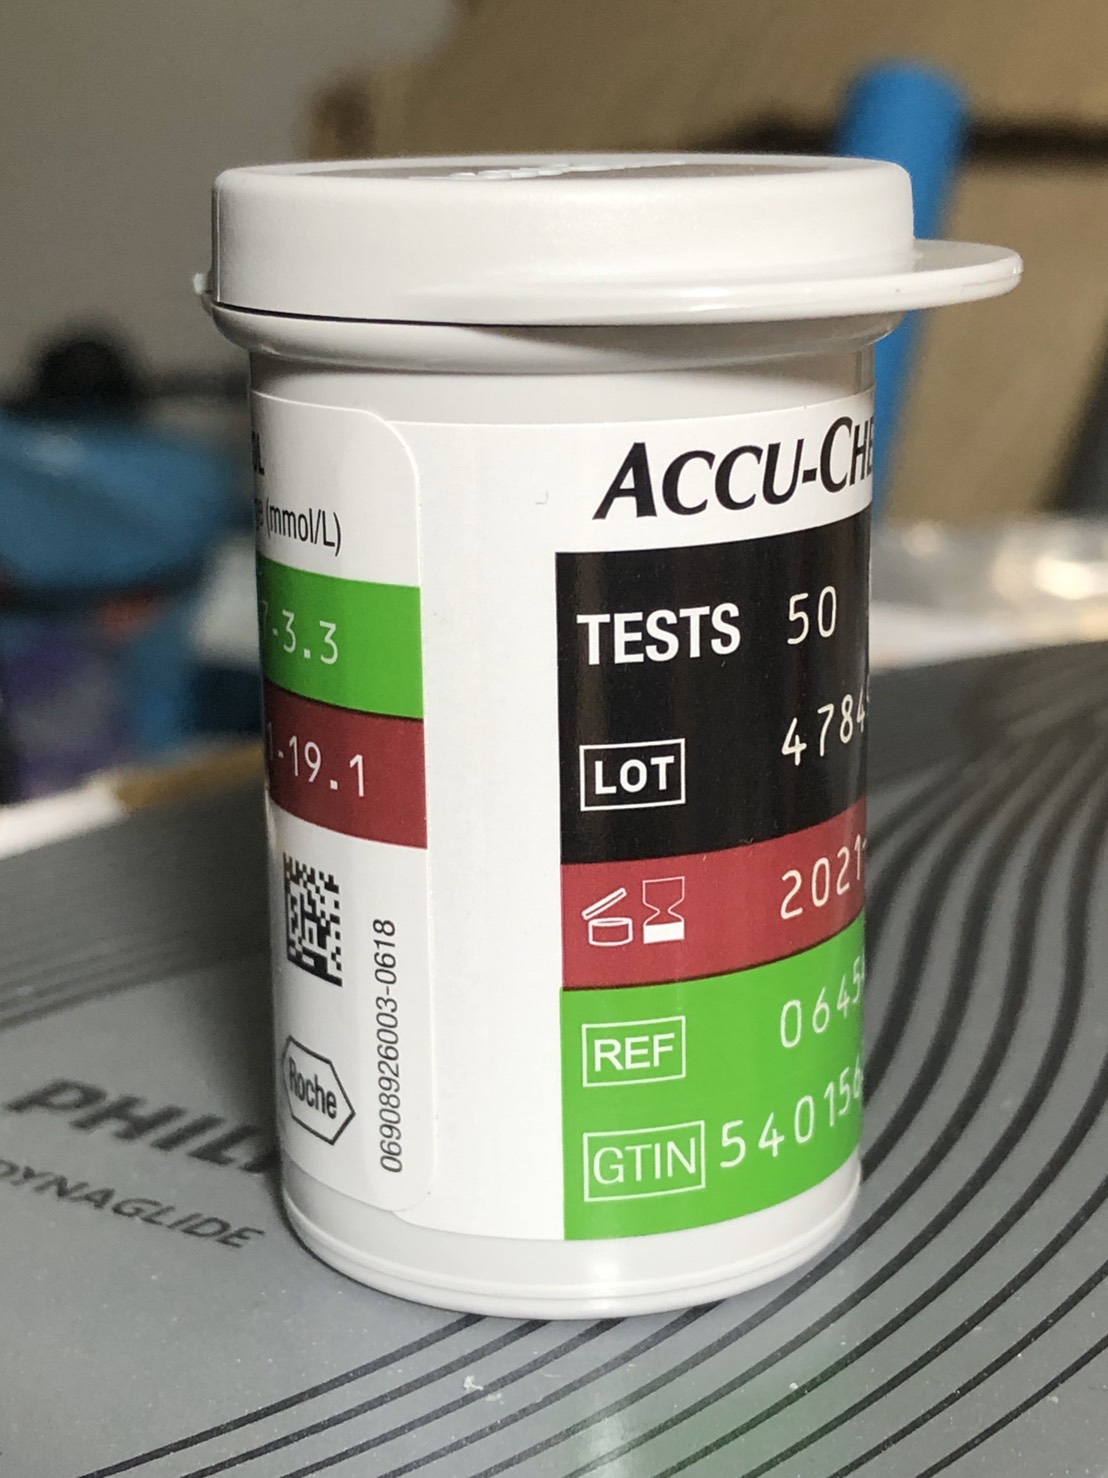 แผ่นตรวจ น้ำตาล Accu-Chek Performa Test Strip แอคคูเชต แผ่นตรวจน้ำตาล Accuchek 50 ชิ้น (ของแท้)  accuchek accu chek performa แผ่นตรวจน้ำตาล